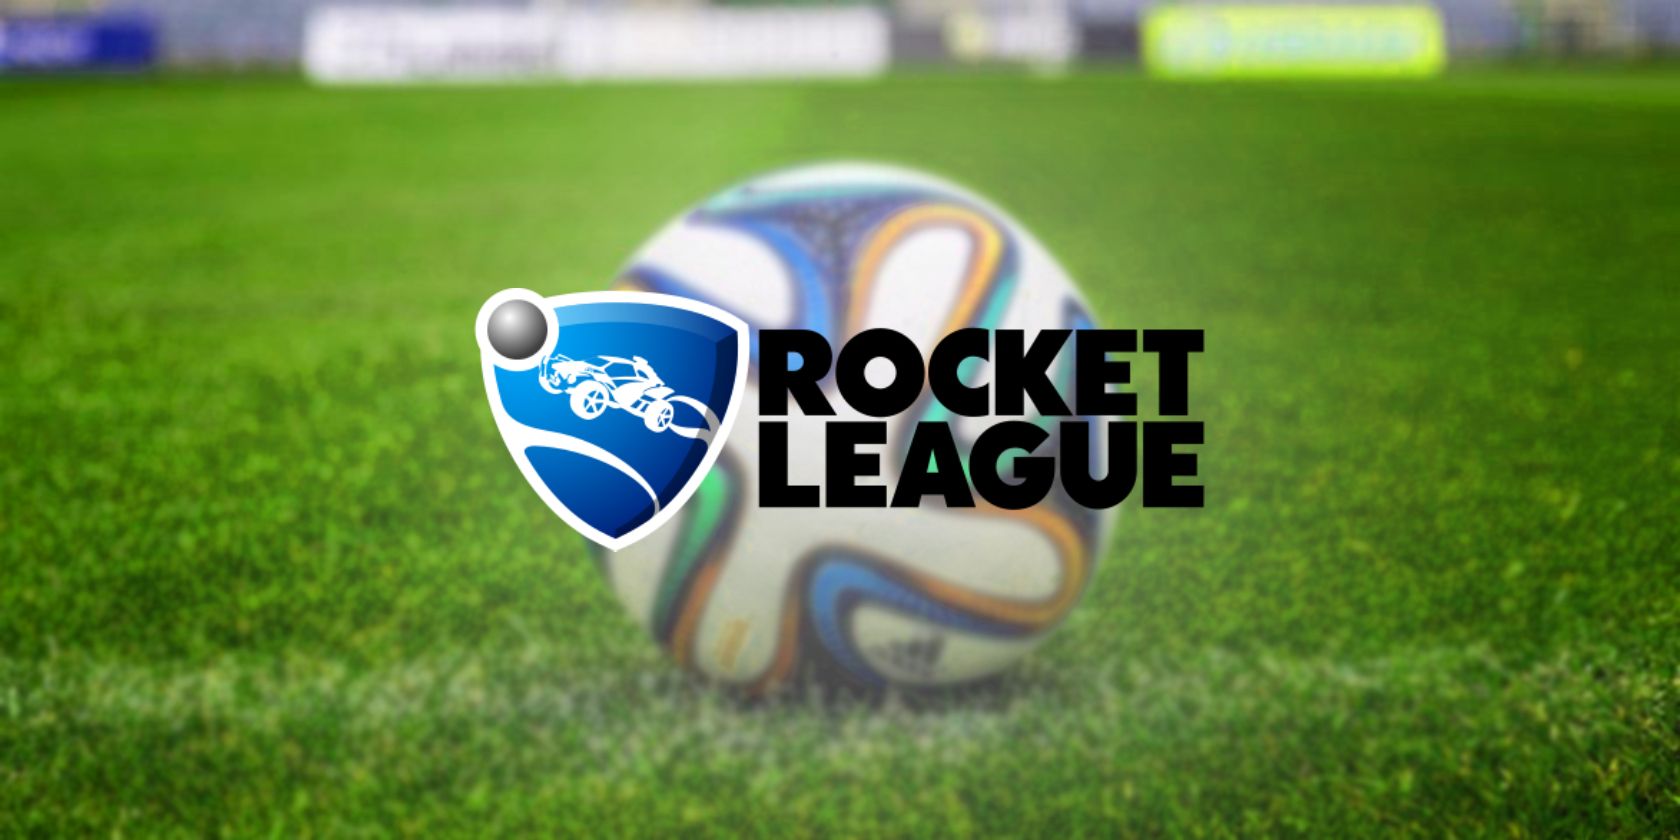 rocket league logo on a field background